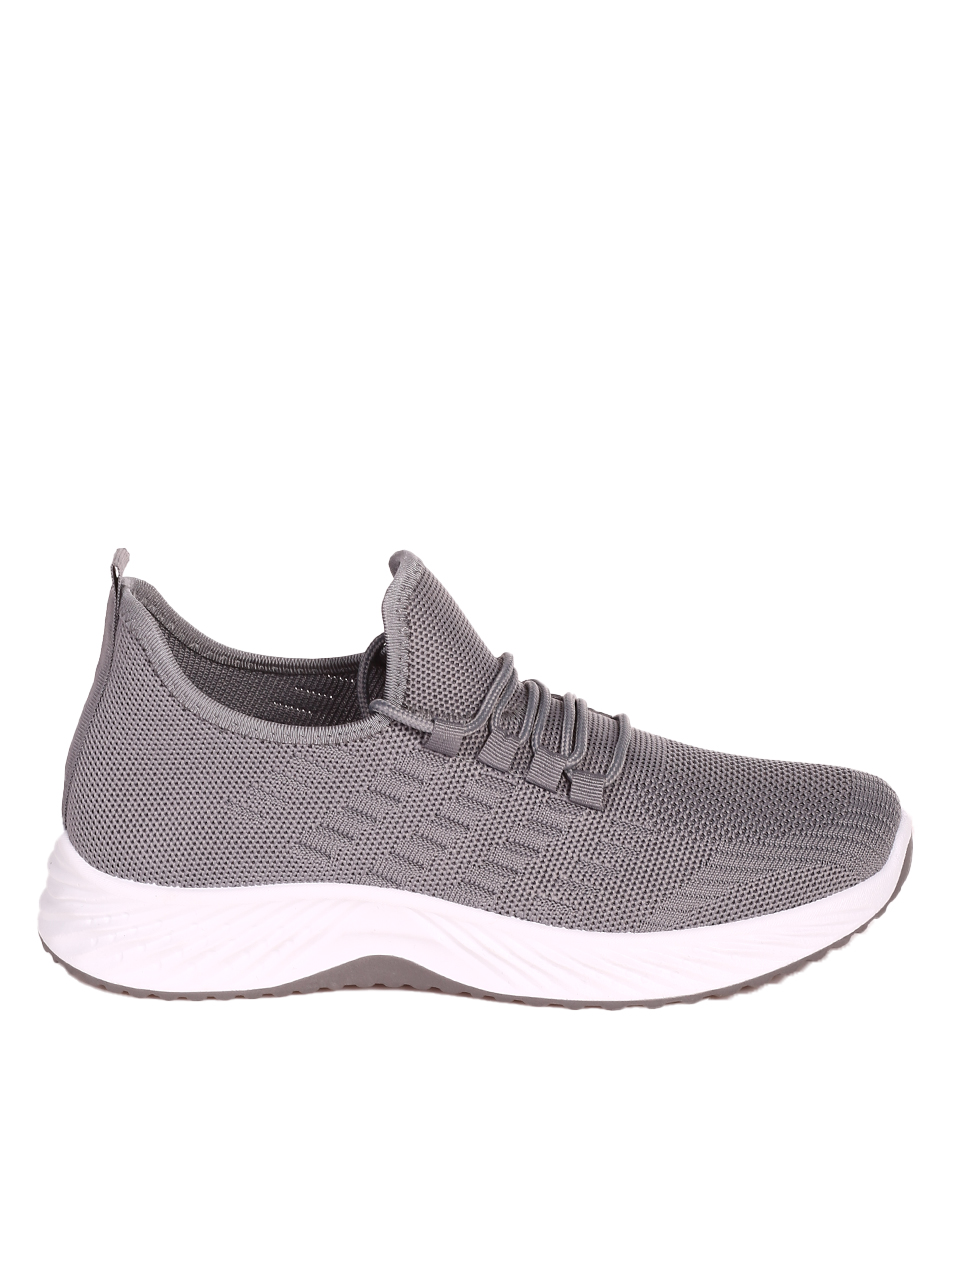 Ежедневни мъжки комфортни обувки в сиво 7U-23216 grey